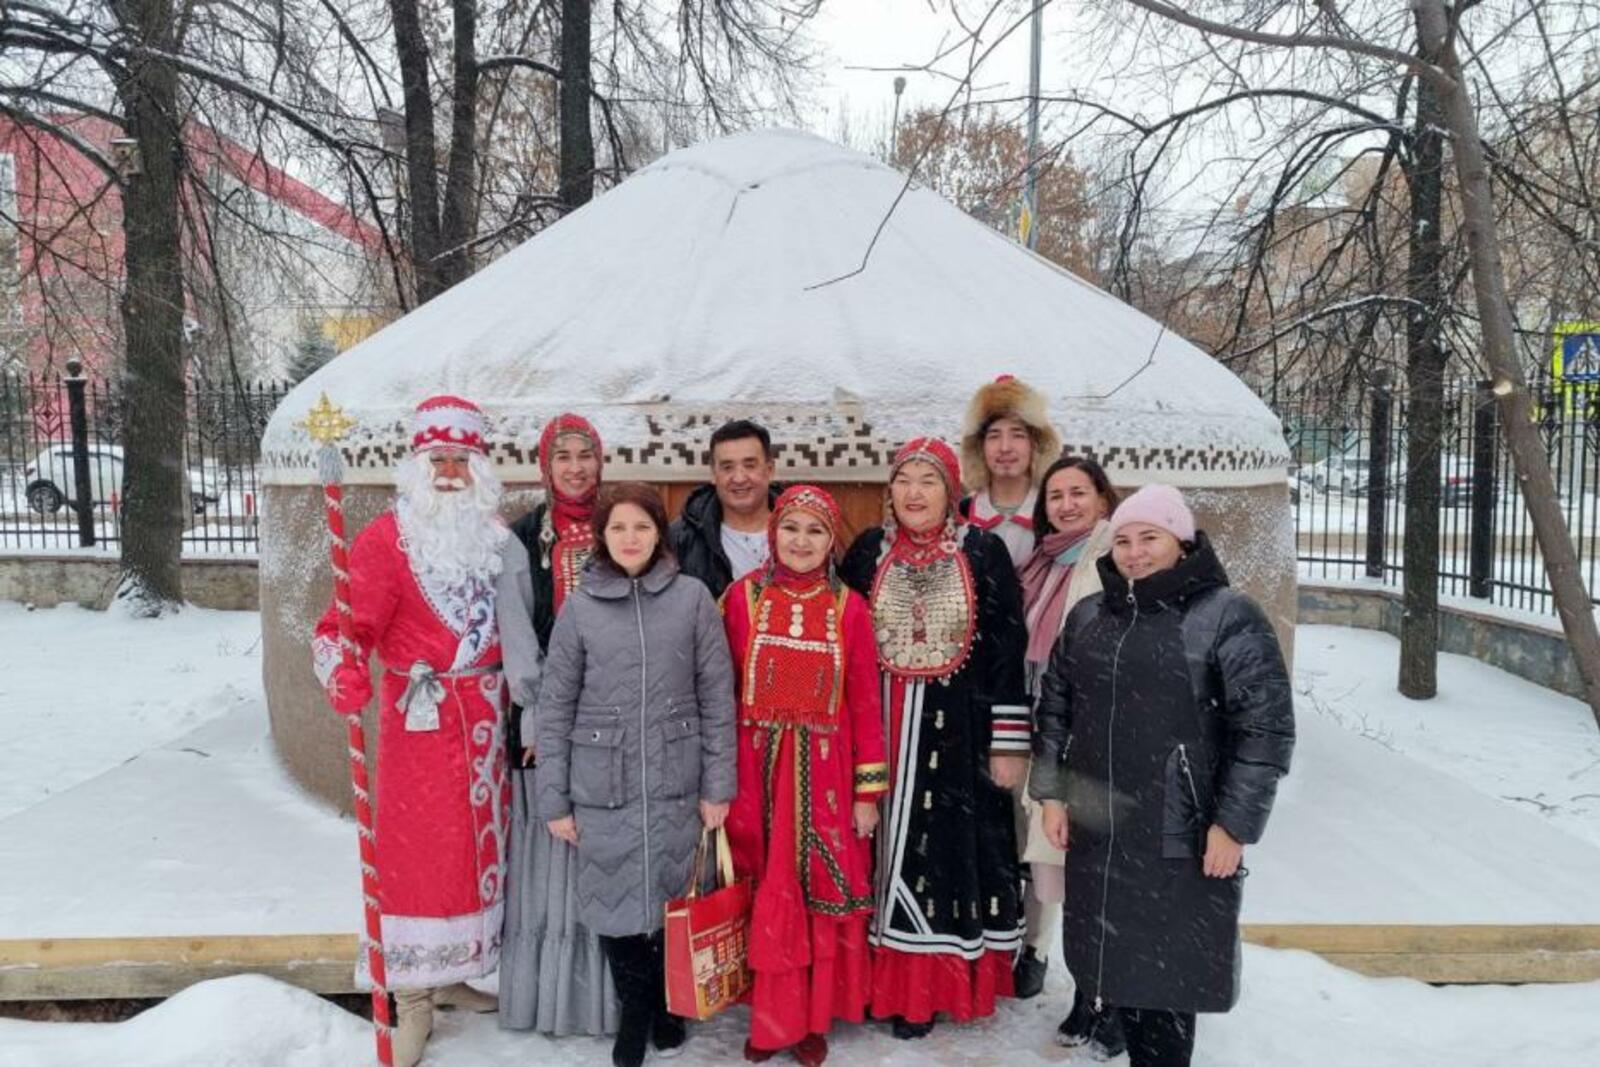 В Уфе открылась новая туристическая достопримечательность – юрта башкирского Деда Мороза – Актун-бабая